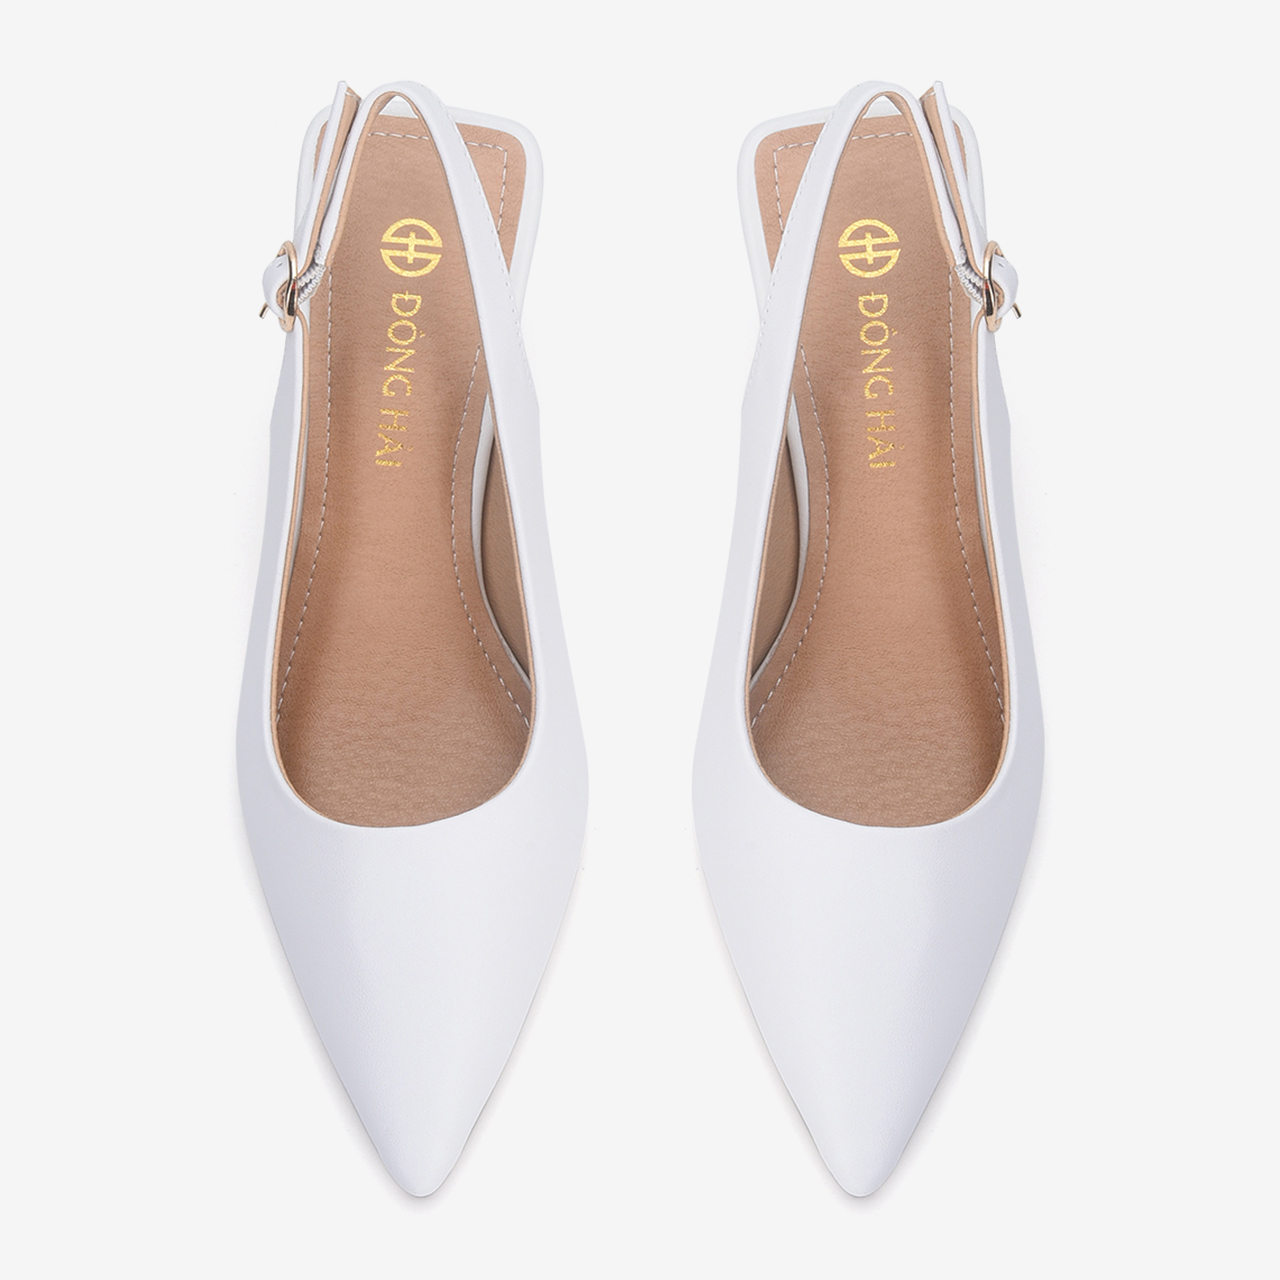 Giày cao gót nữ Đông Hải thiết kế Slingback mũi nhọn thanh lịch gót nhọn nữ tính cao 7cm vừa phải - G5808